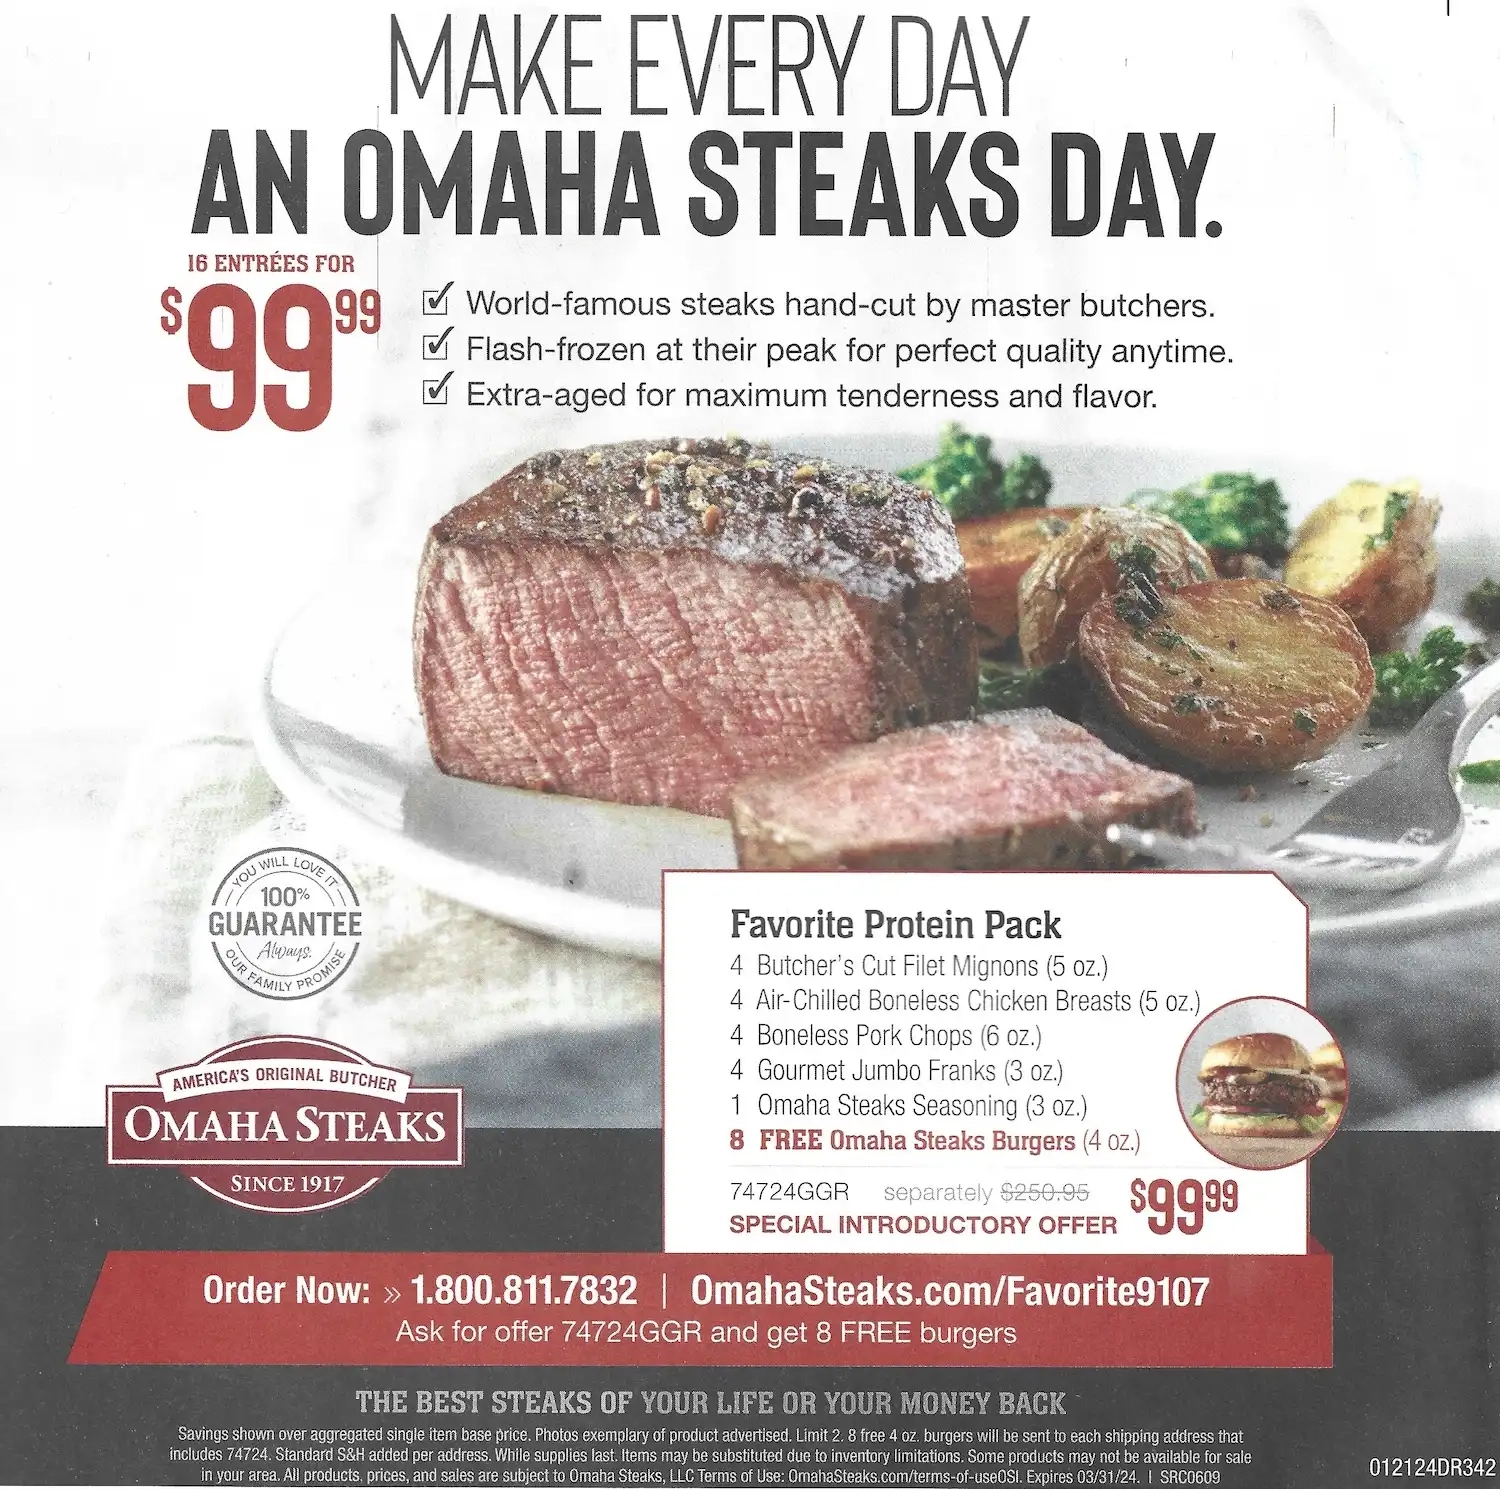 Omaha Steaks Favorite Protein Pack + 8 Free Steak Burgers Promo Code - Expires 03/31/2024